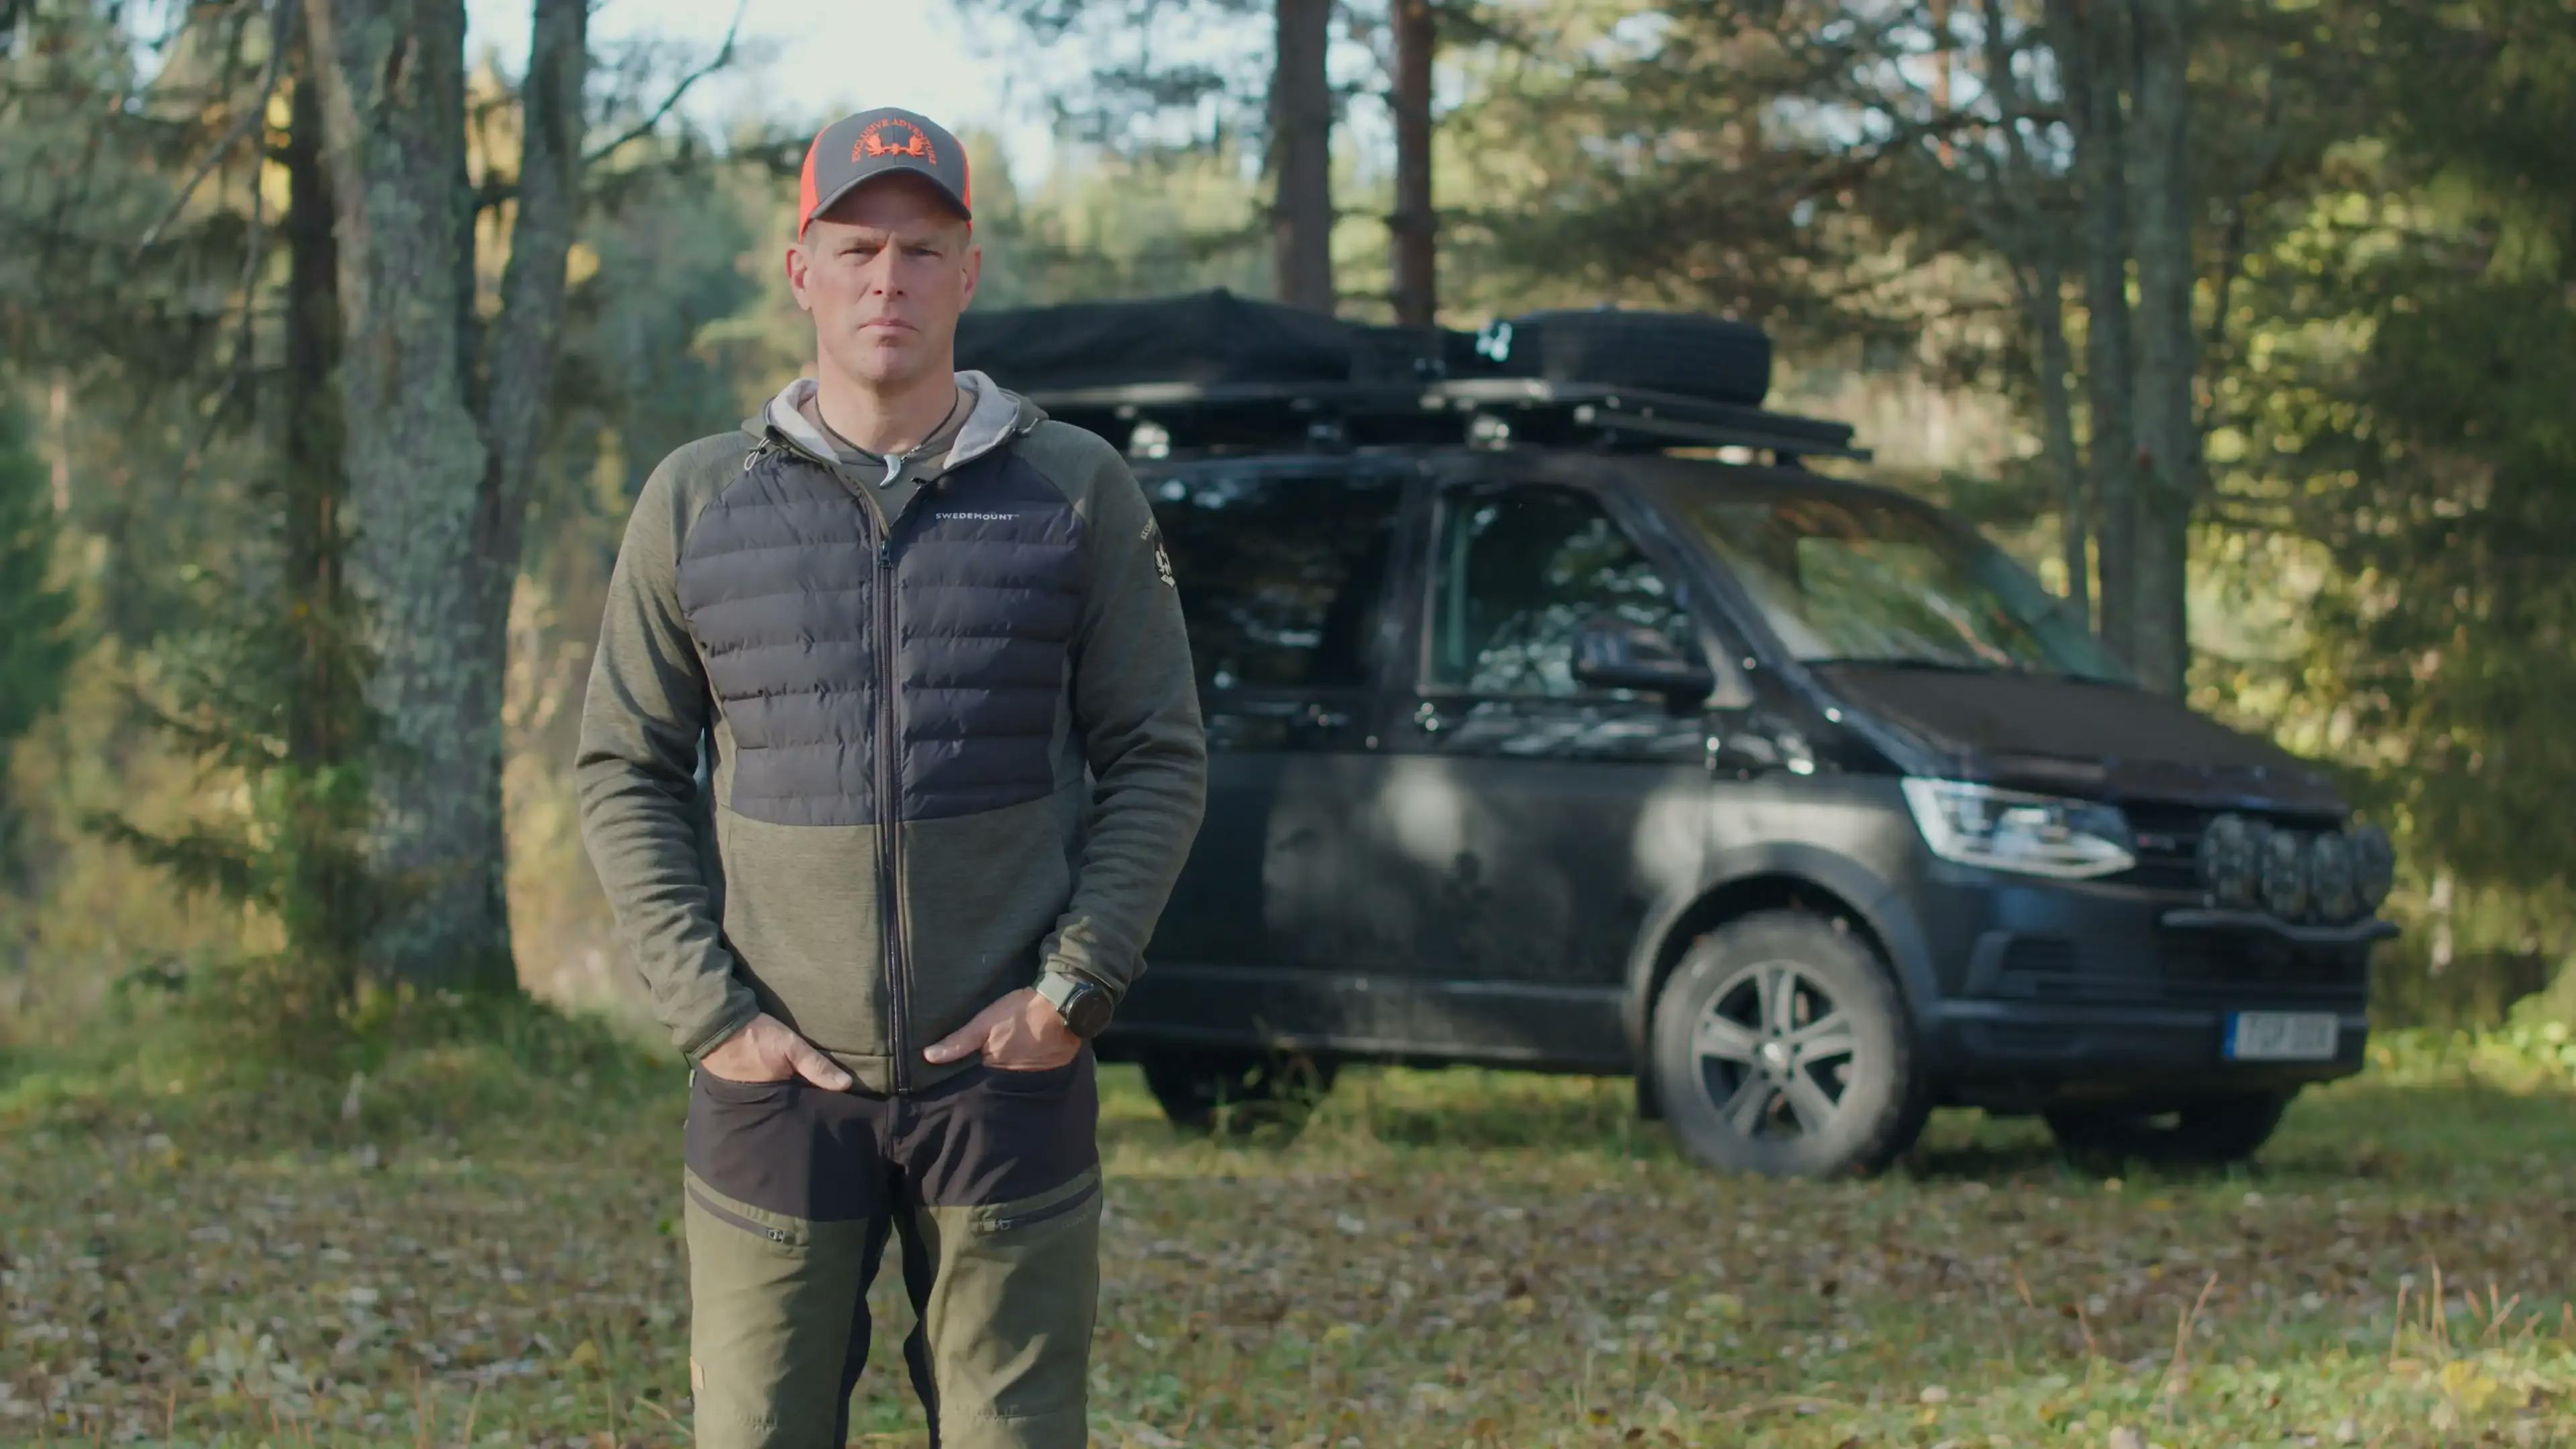 Äventyrsguiden Fredrik Myhr älskar alla typer av naturupplevelser i fjäll och skog och har jobbat med jakt i 32 år. Nu har han byggt den ultimata jaktbilen av en Volkswagen Multivan.